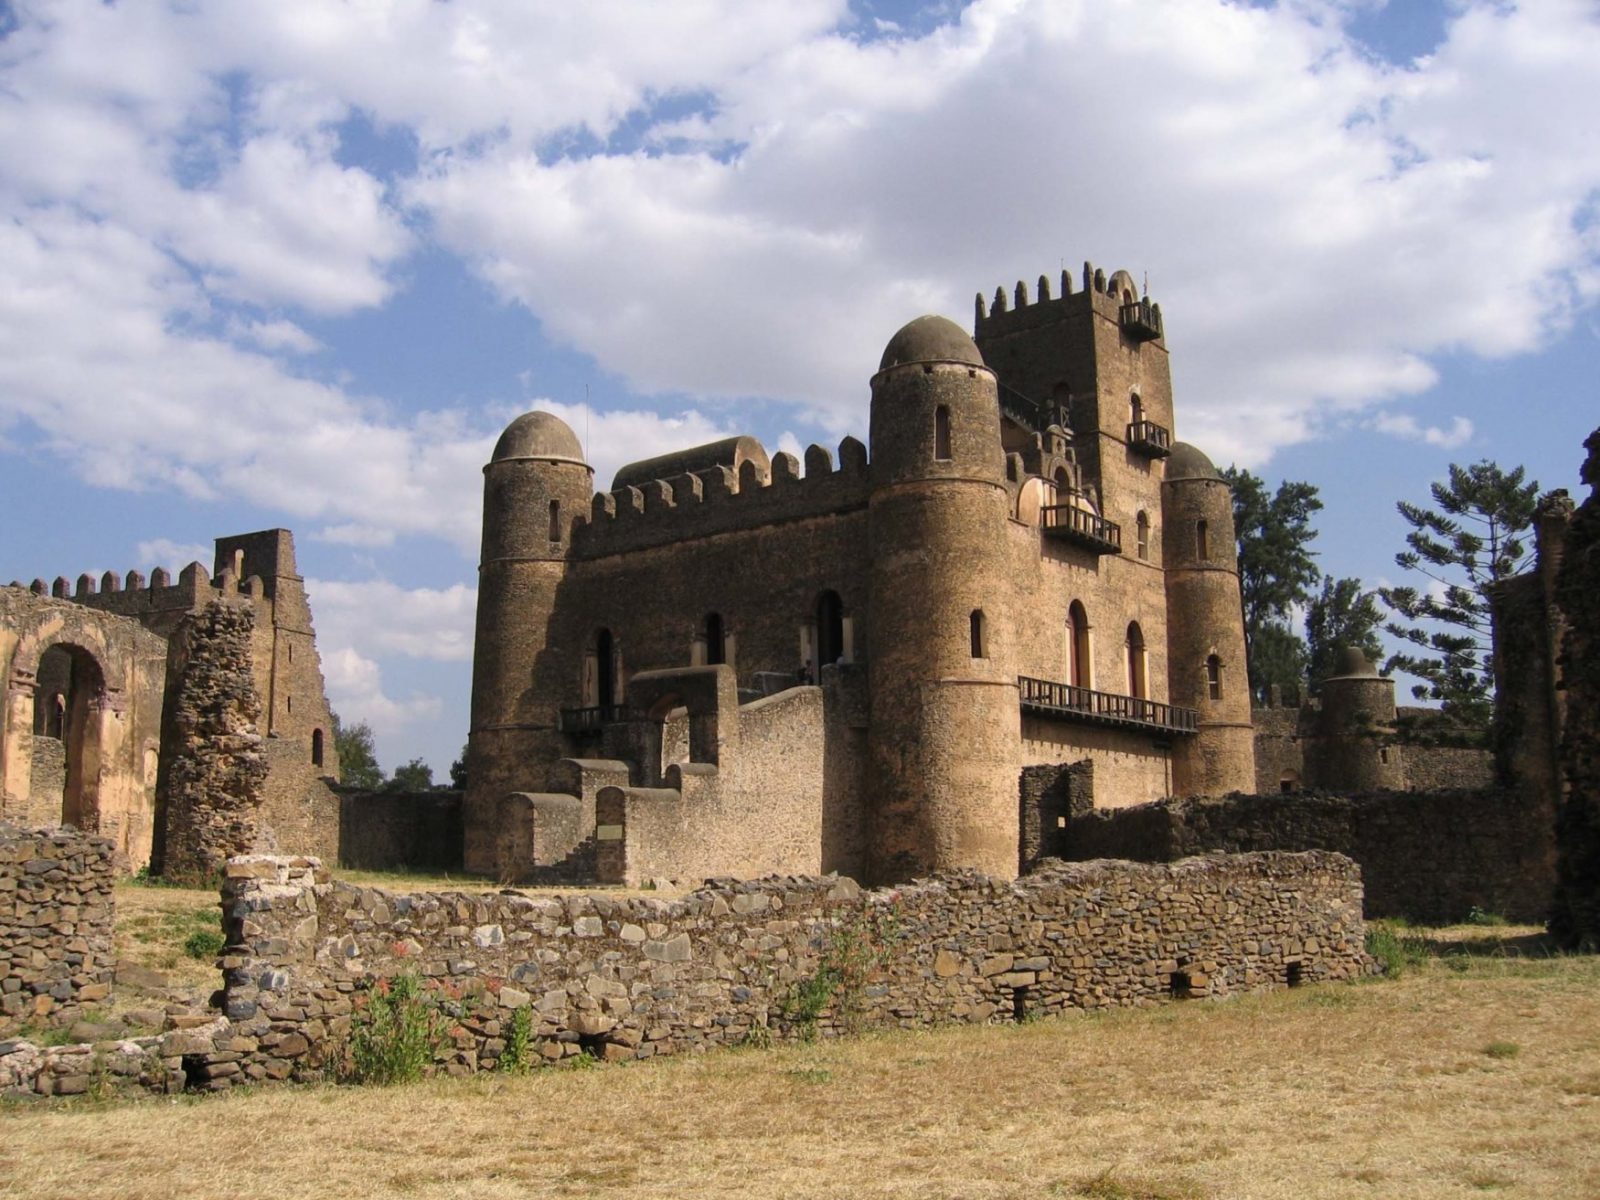 Gondor palace Ethiopia tour history tour.